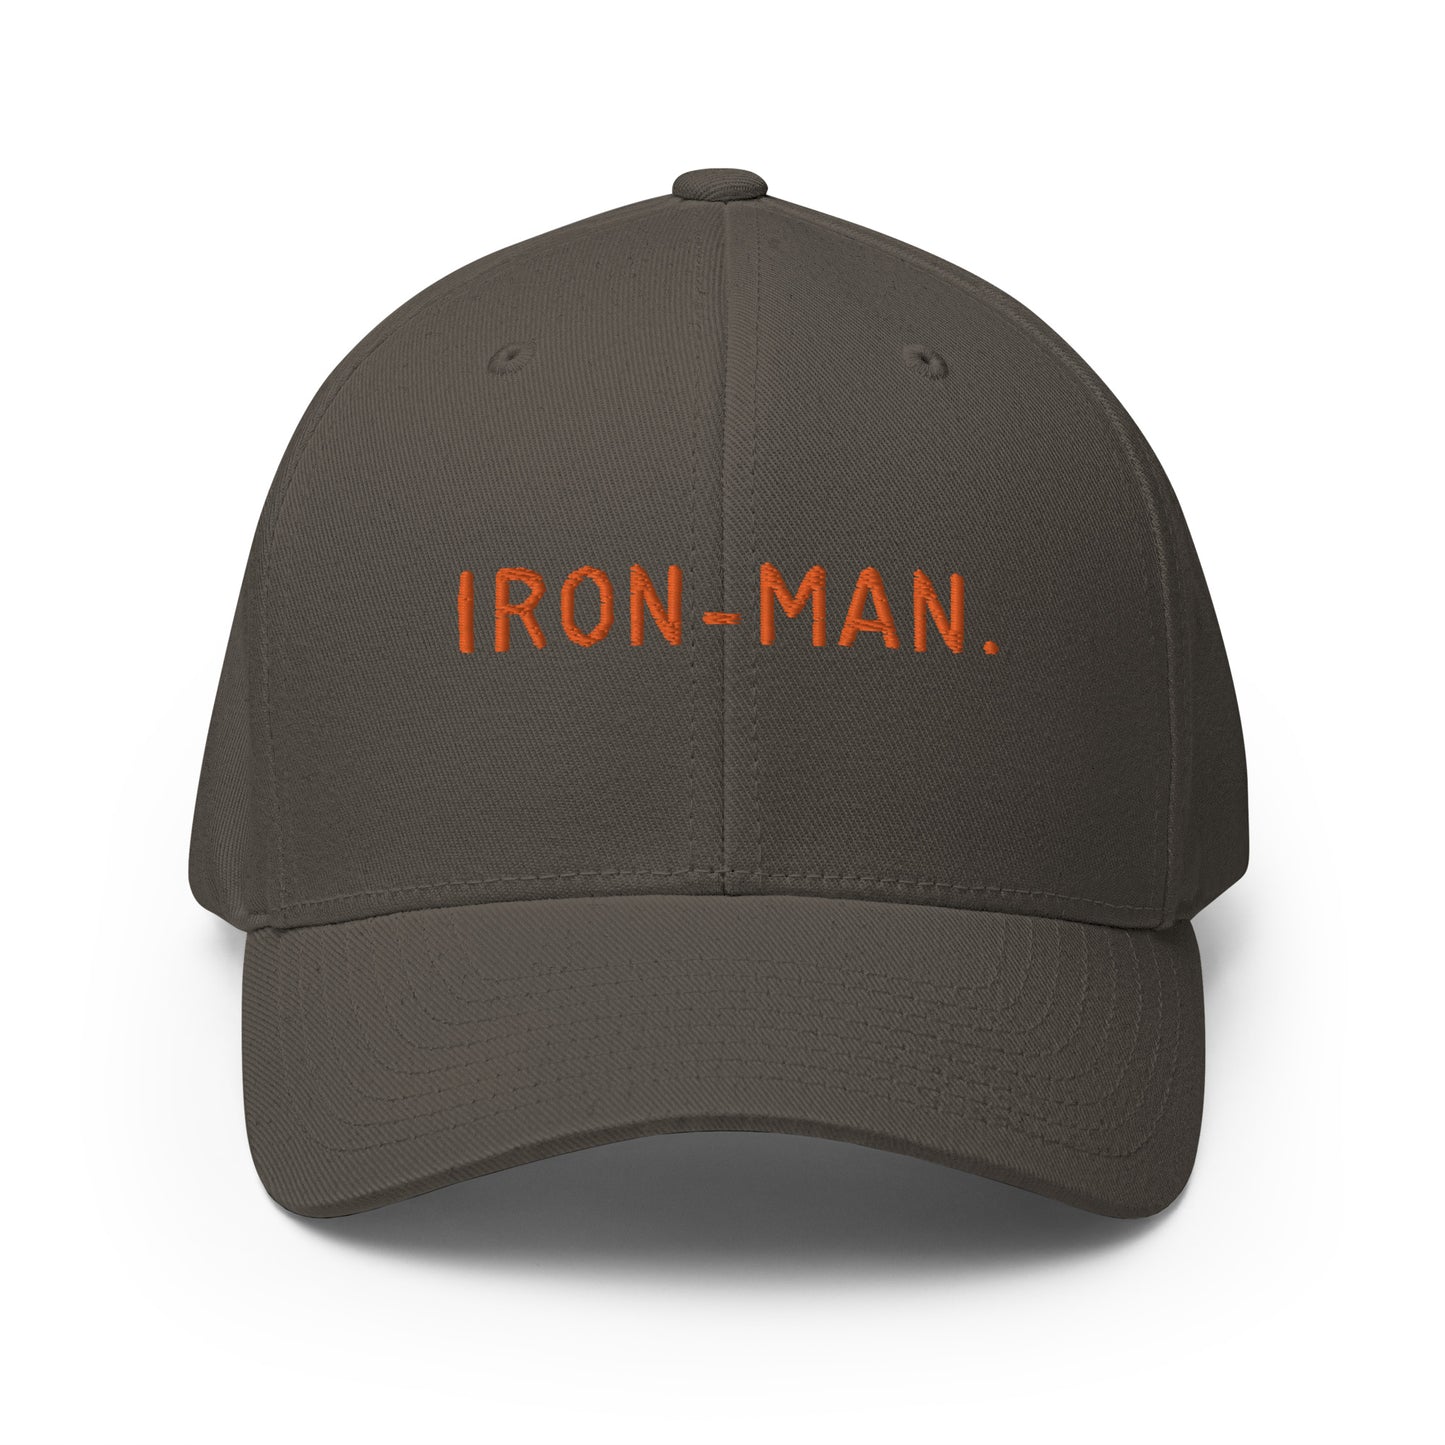 THE "IRON-MAN" BASEBALL CAP